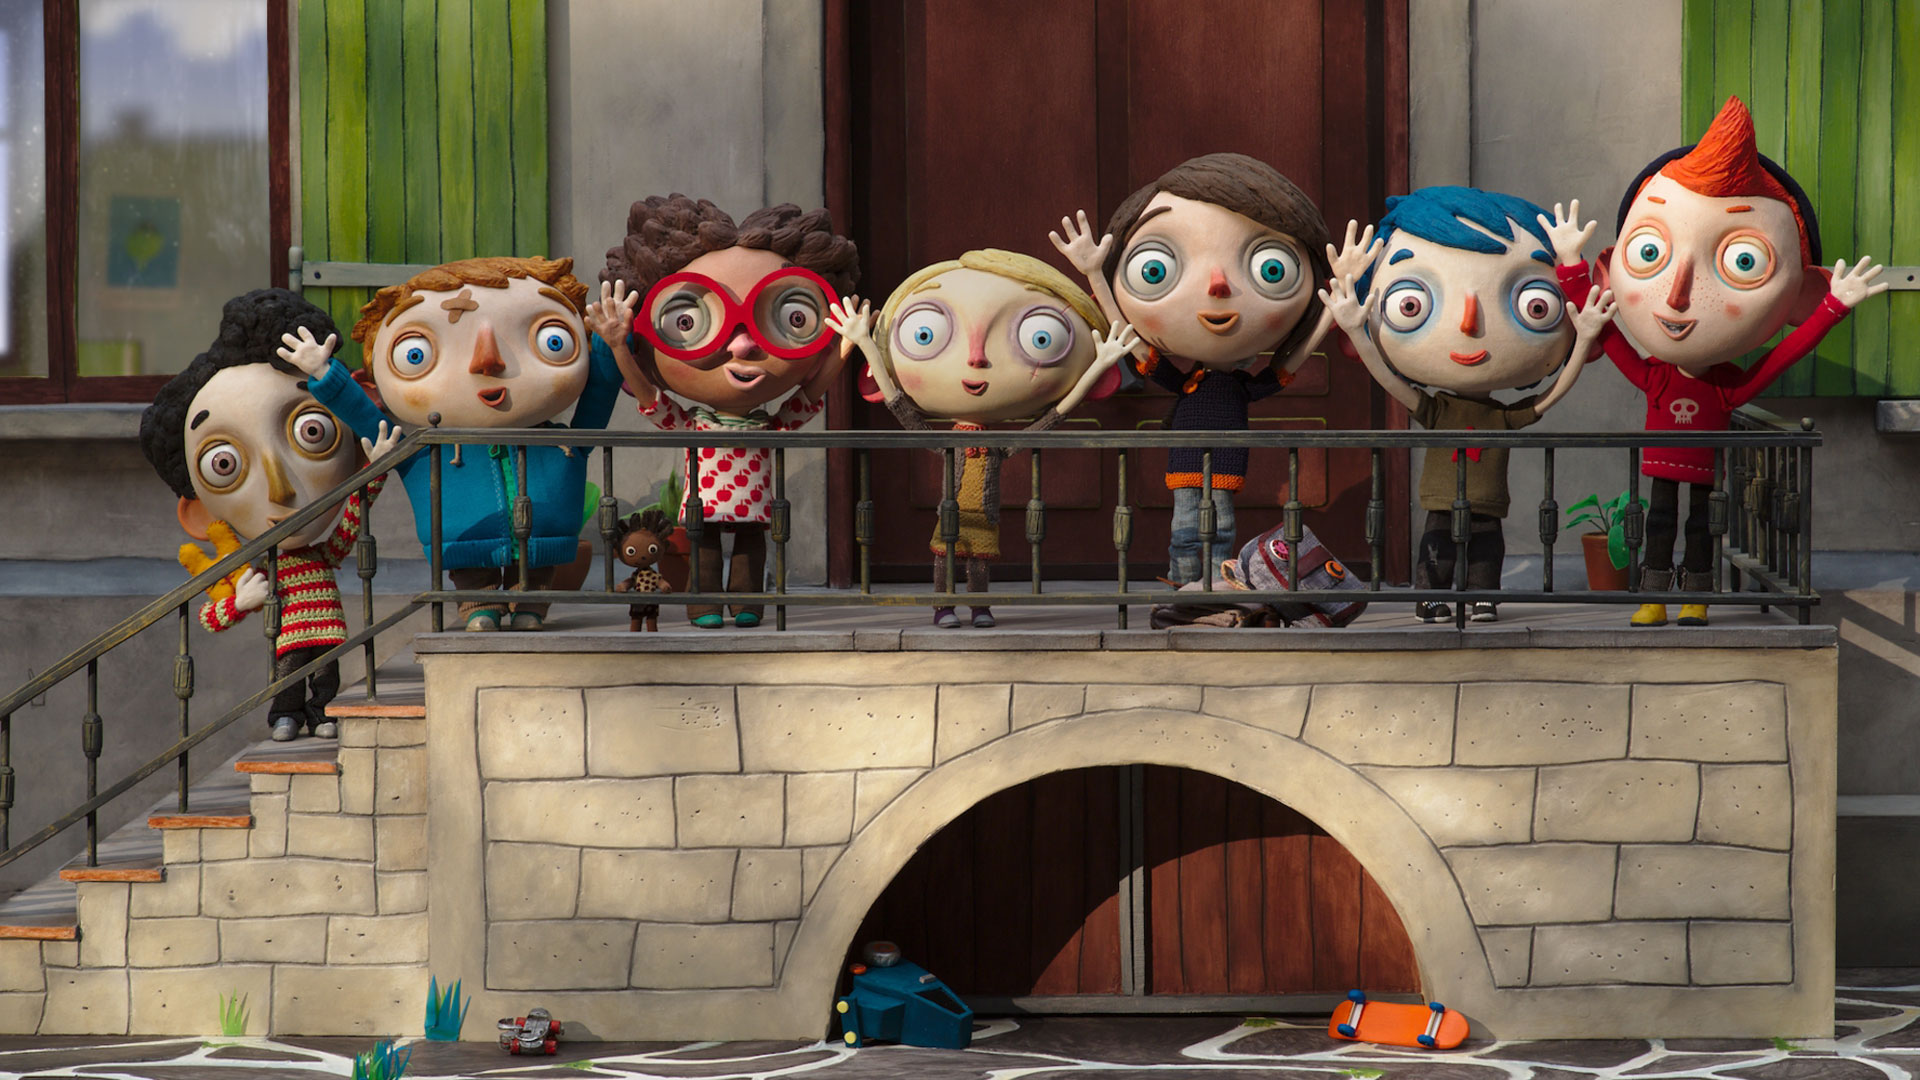 Filmstill aus dem Animationsfilm "Mein Leben als Zucchini": Die sieben kleinen Heimbewohner stehen an dem Geländer einer Steintreppe und reißen freudig die Arme in die Luft.